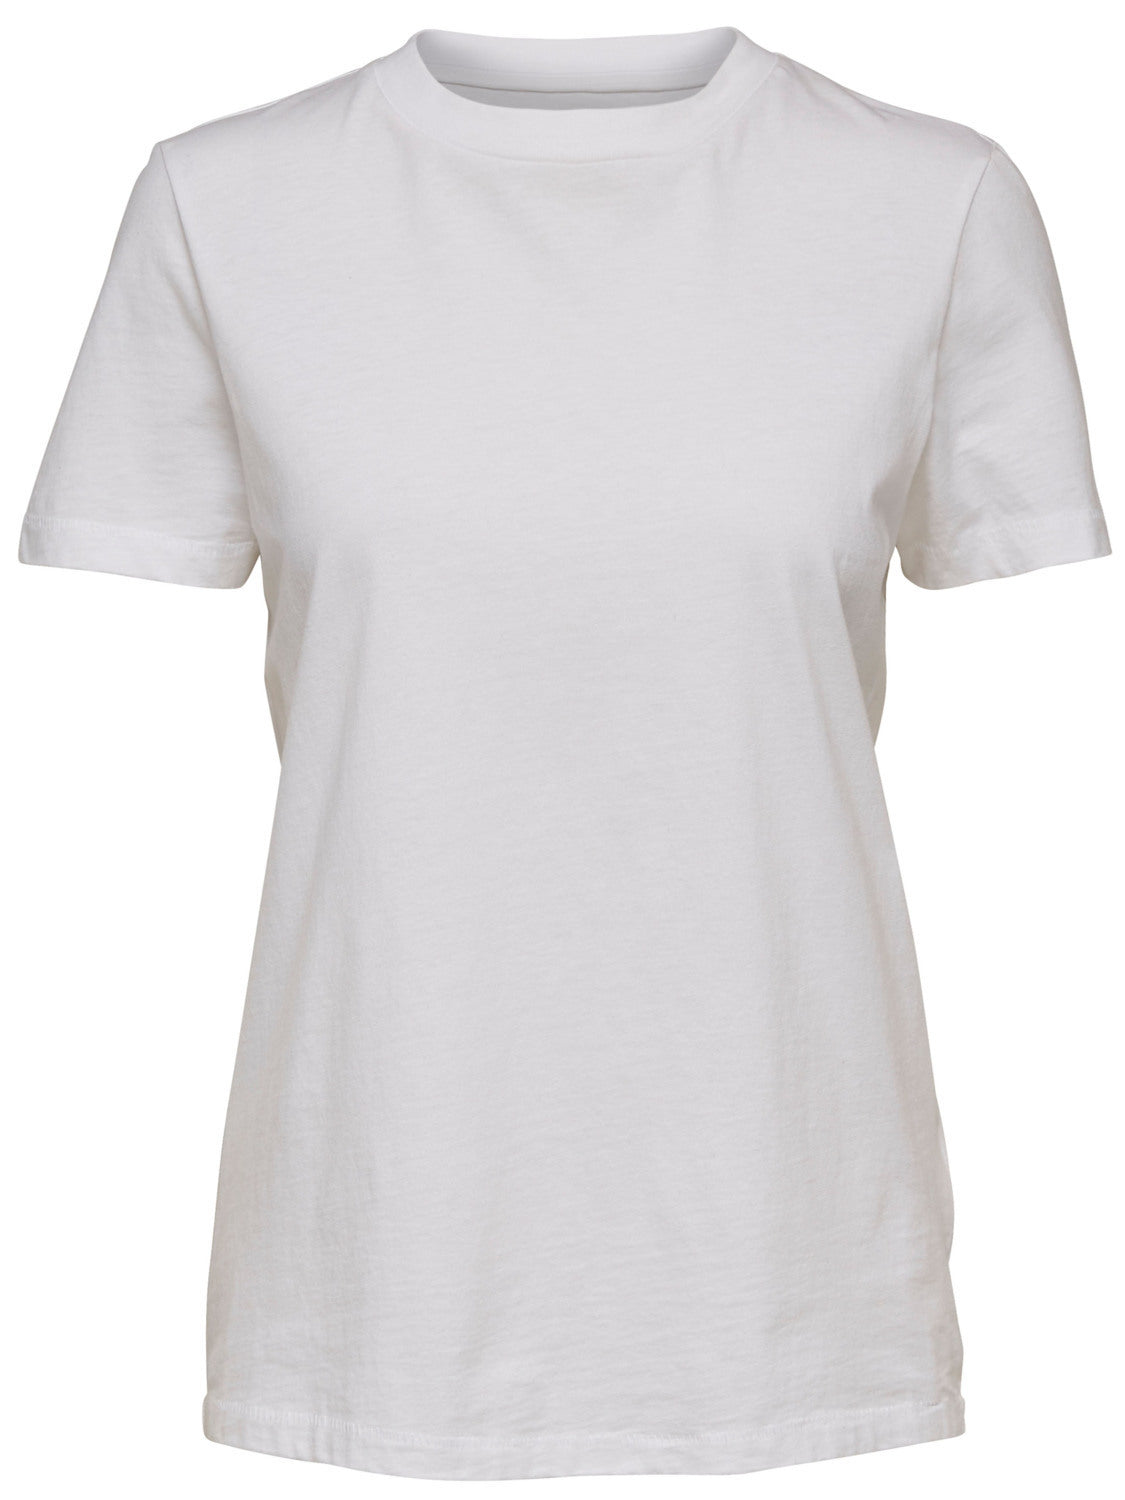 SLFMY T-Shirt - Bright White